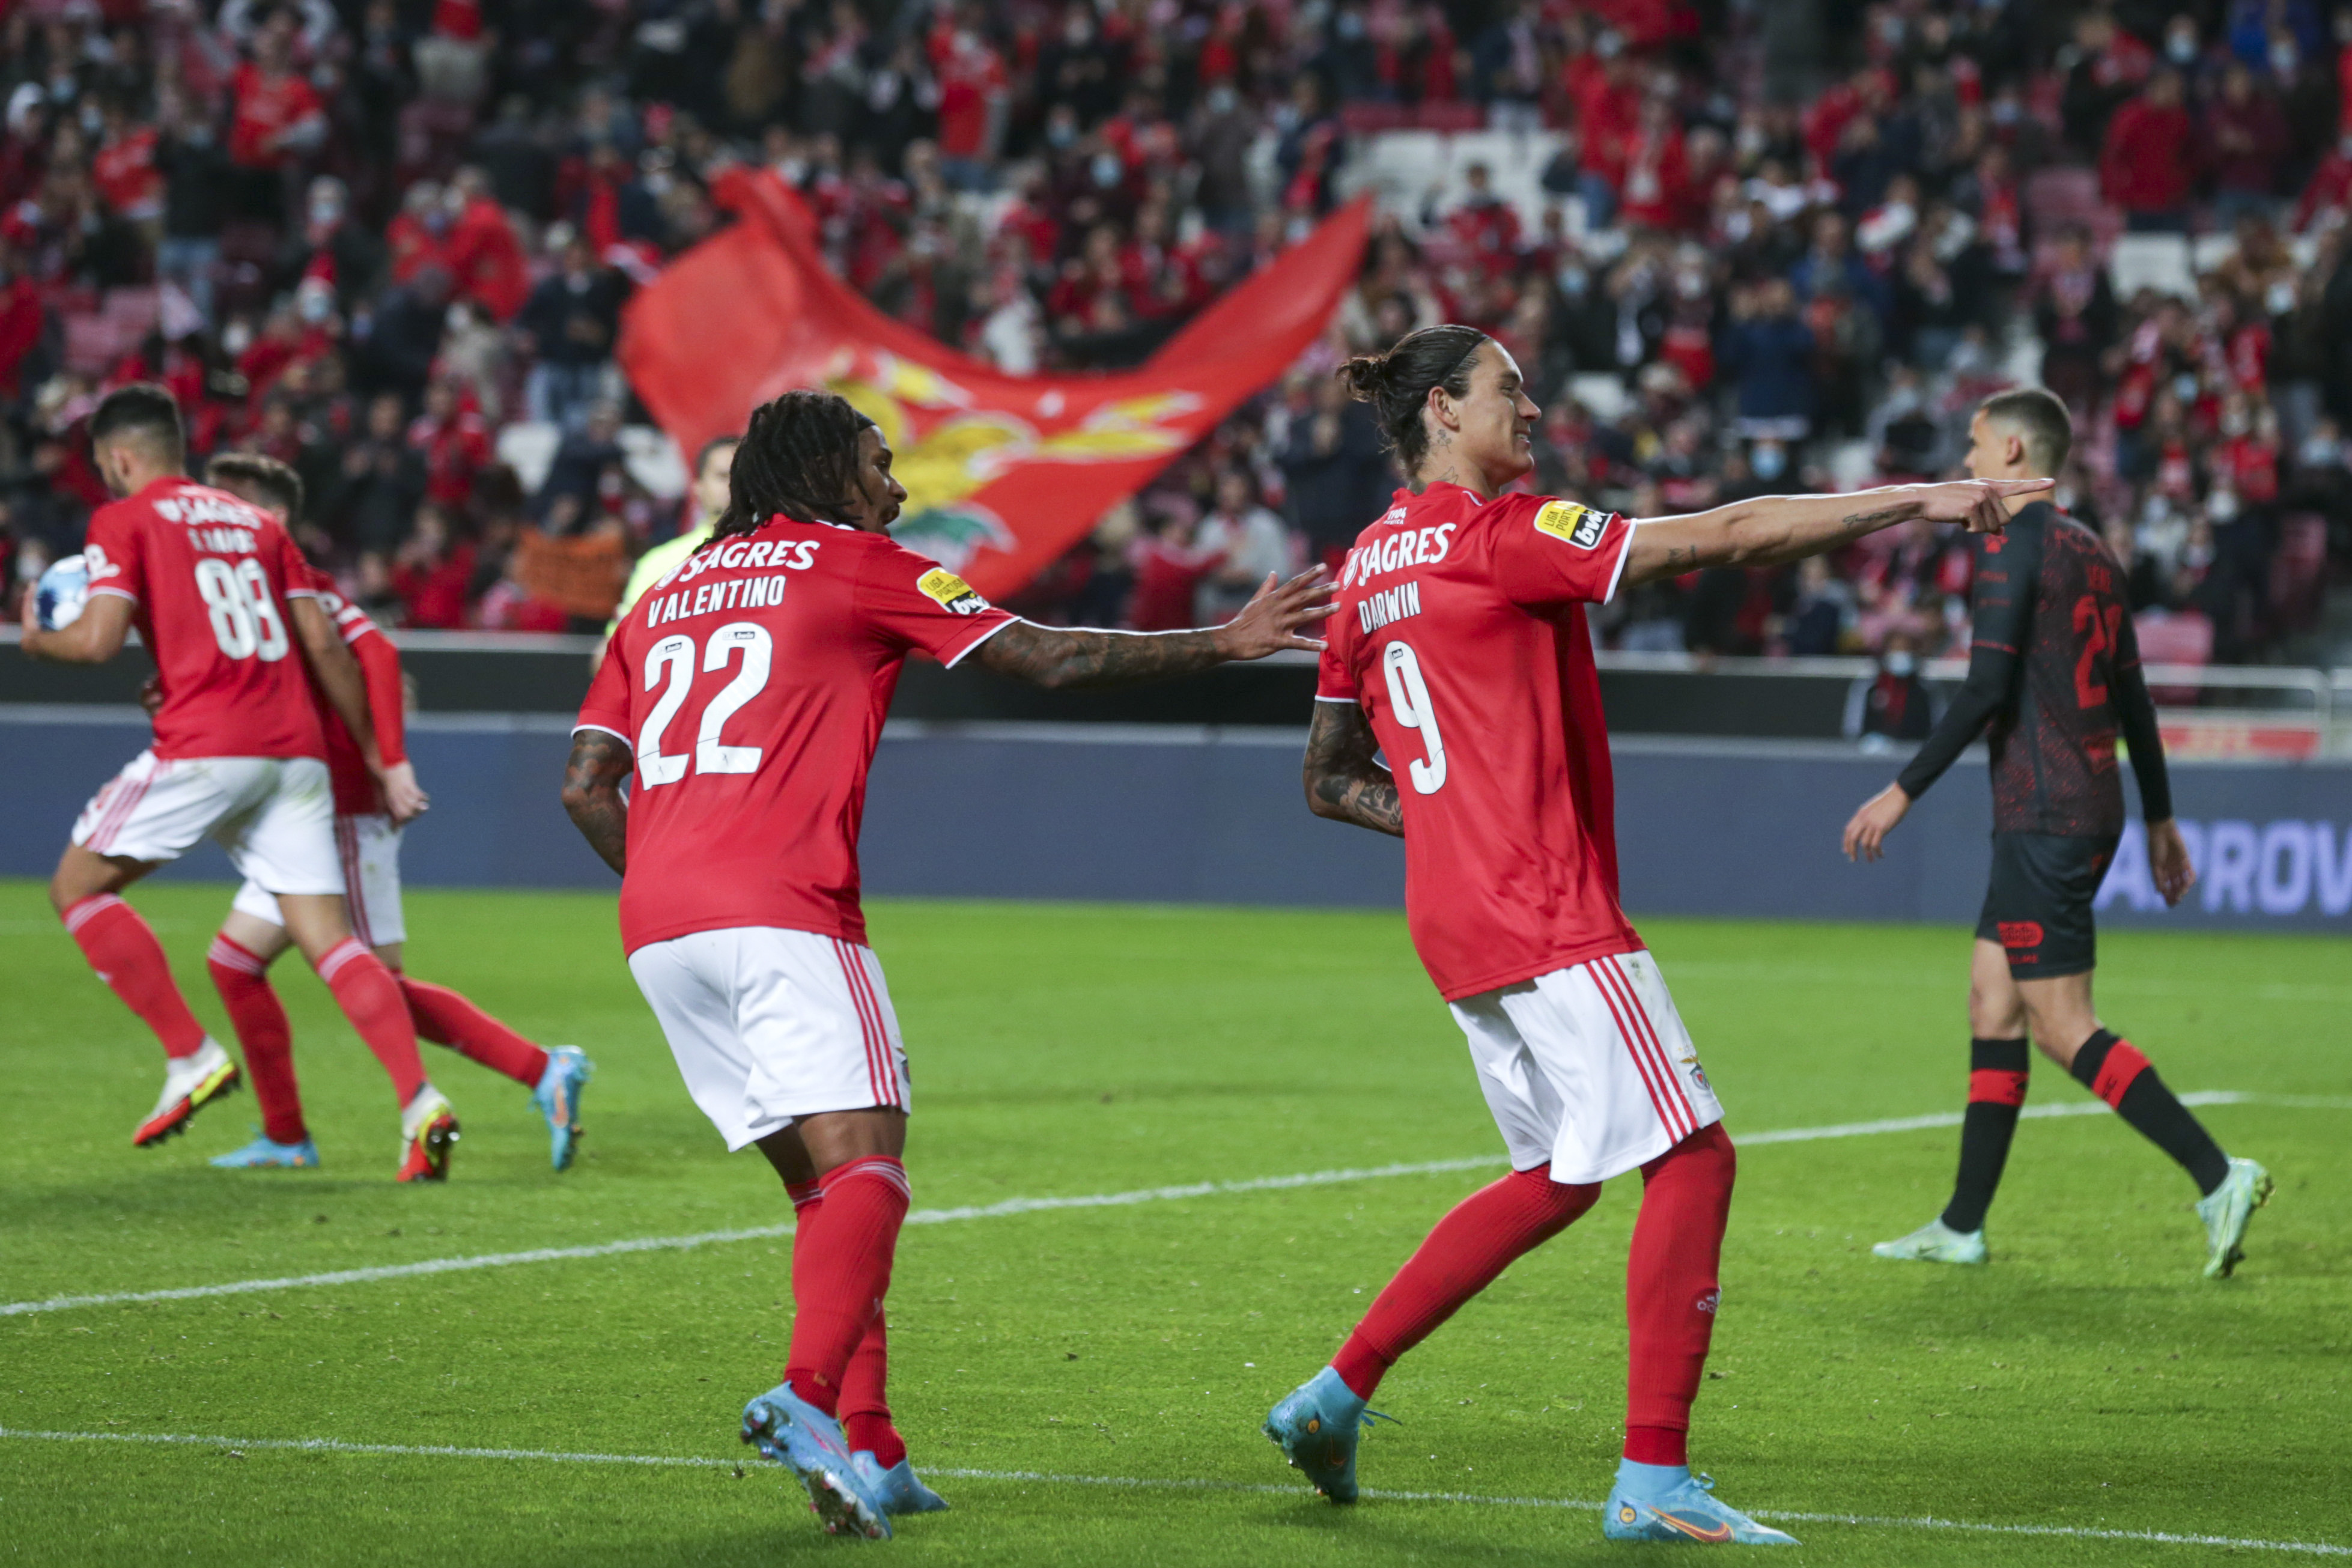 Basquetebol: Benfica vence de forma clara o clássico com o FC